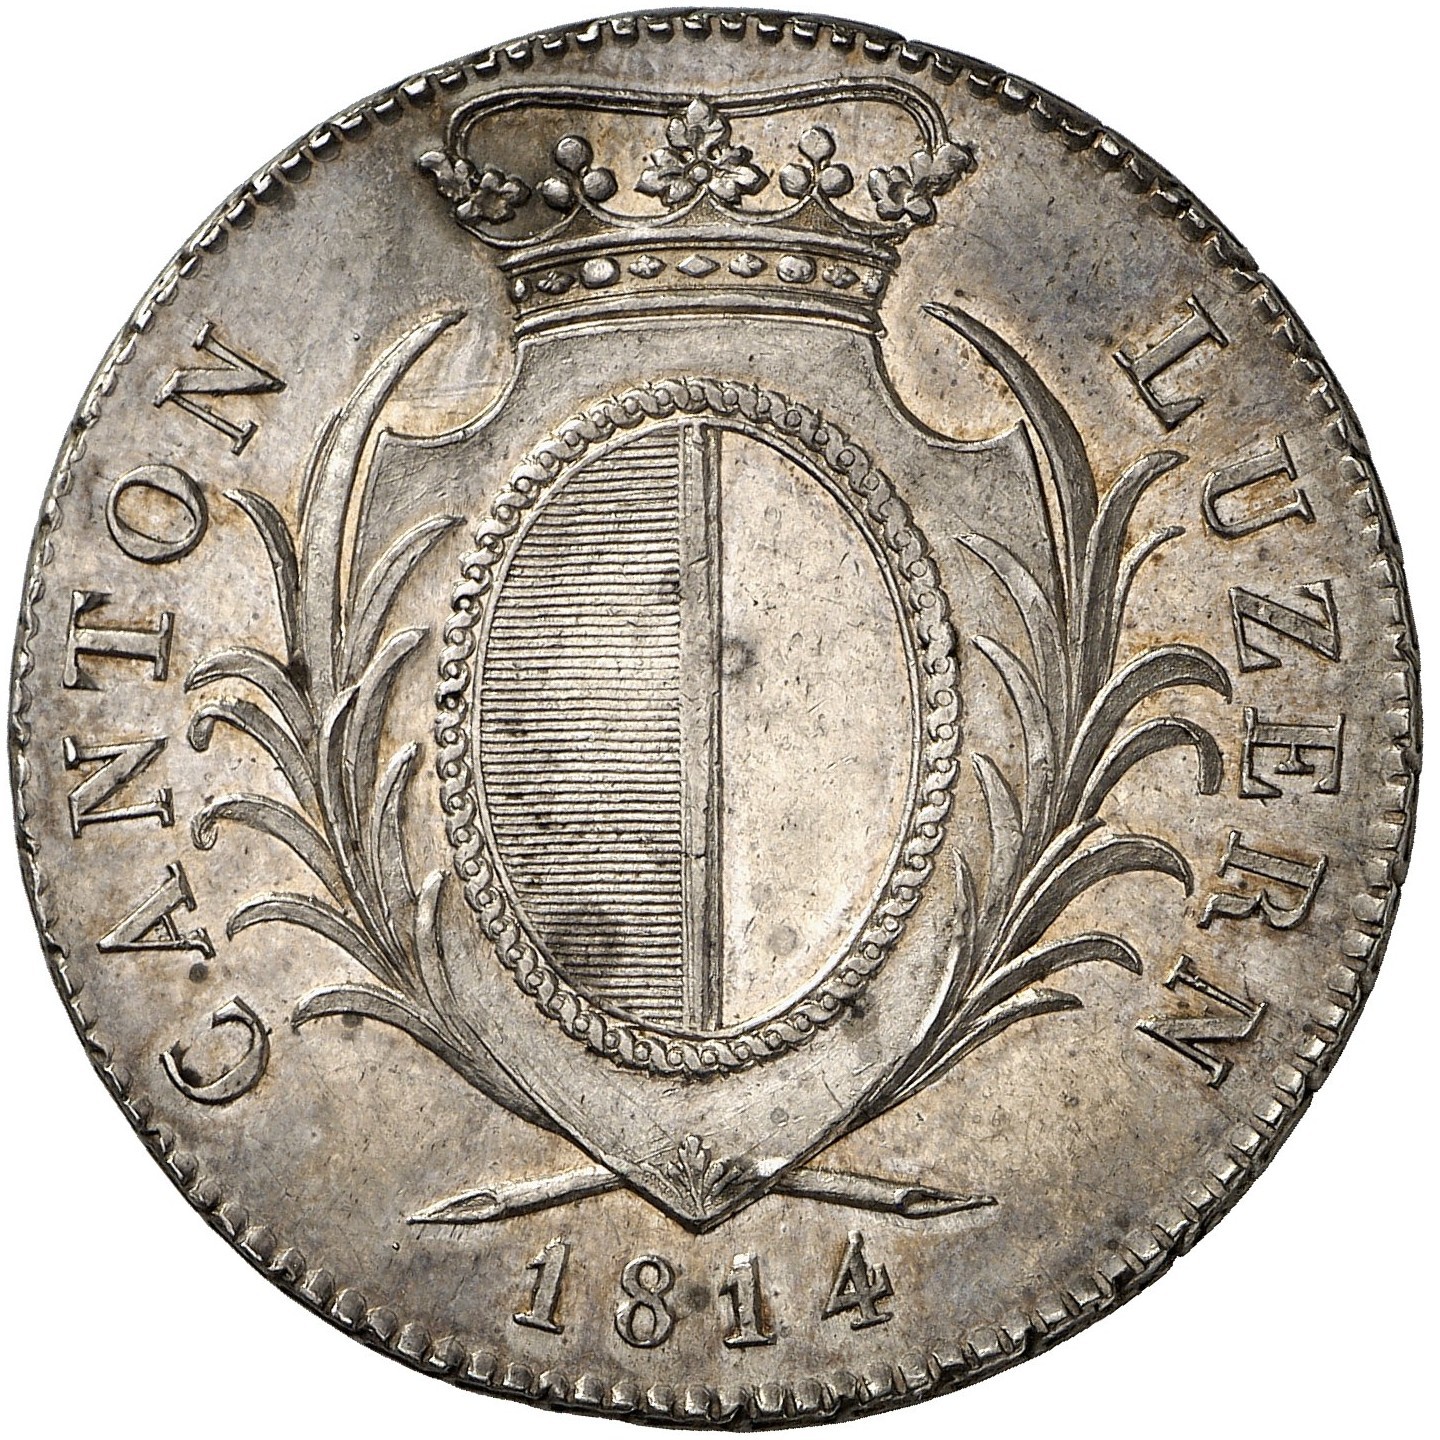 Suisse - 4 Franken - 1814 avers